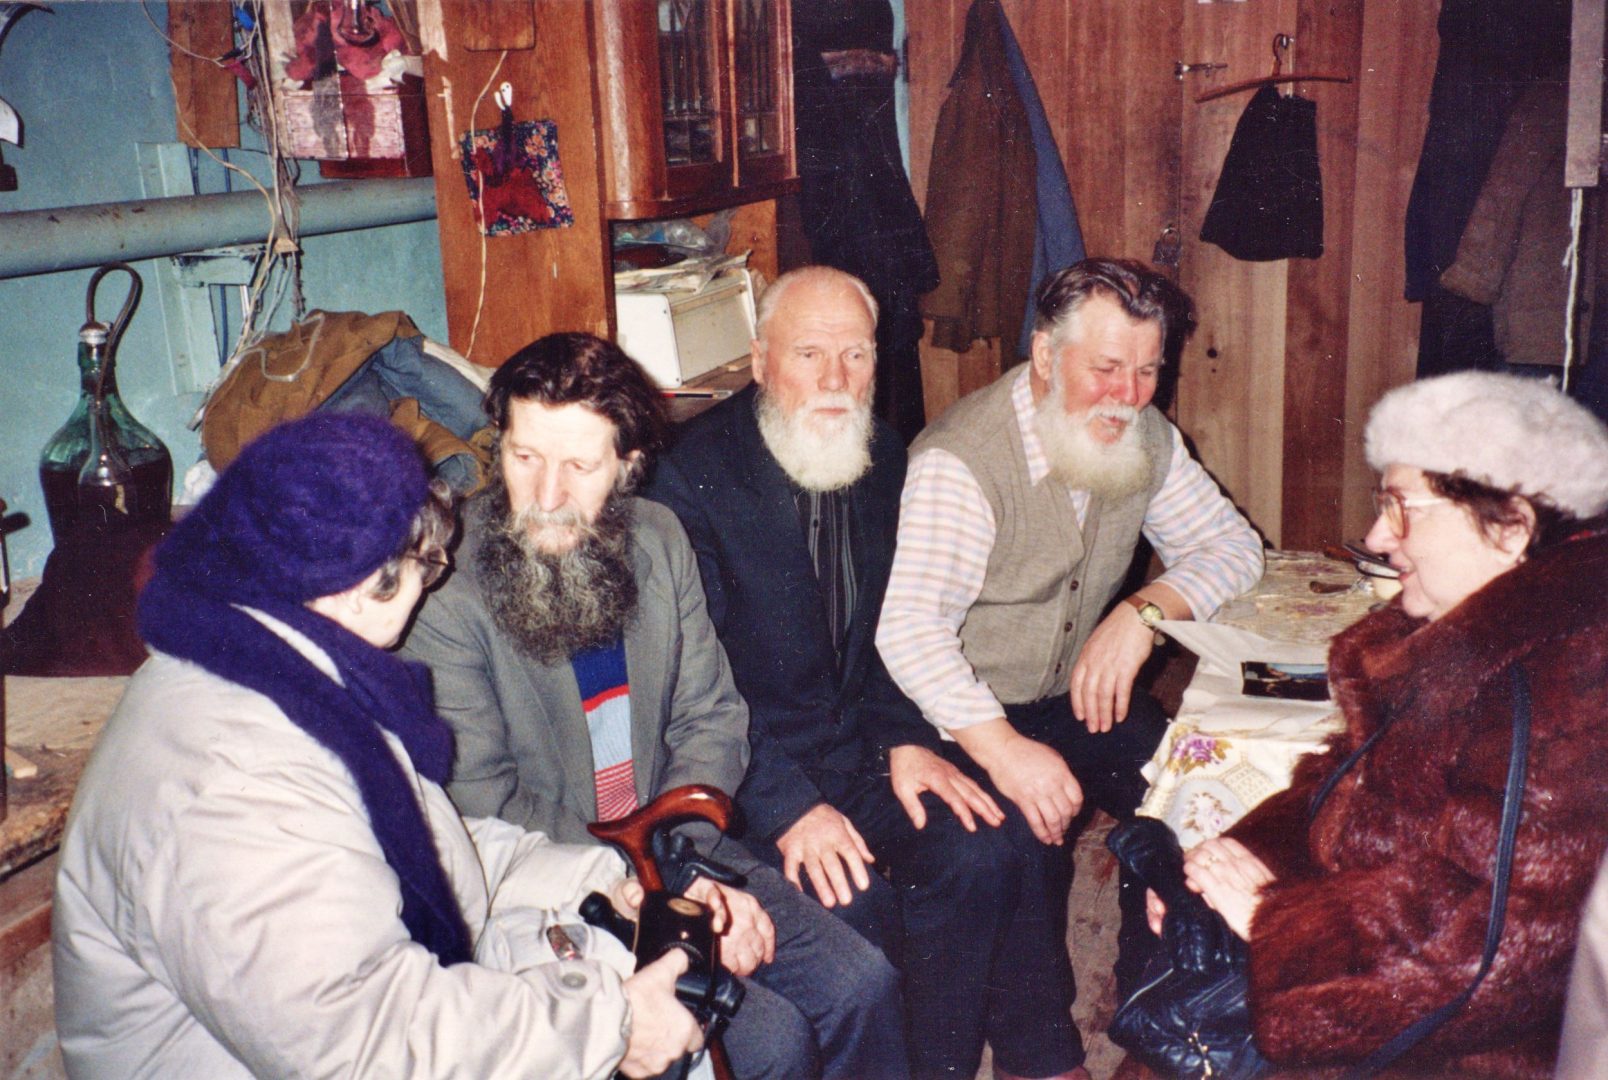 Trzech starszych mężczyzn z brodami siedzi w pomieszczeniu mieszkalnym i rozmawia z kobietą w ciepłym płaszczu